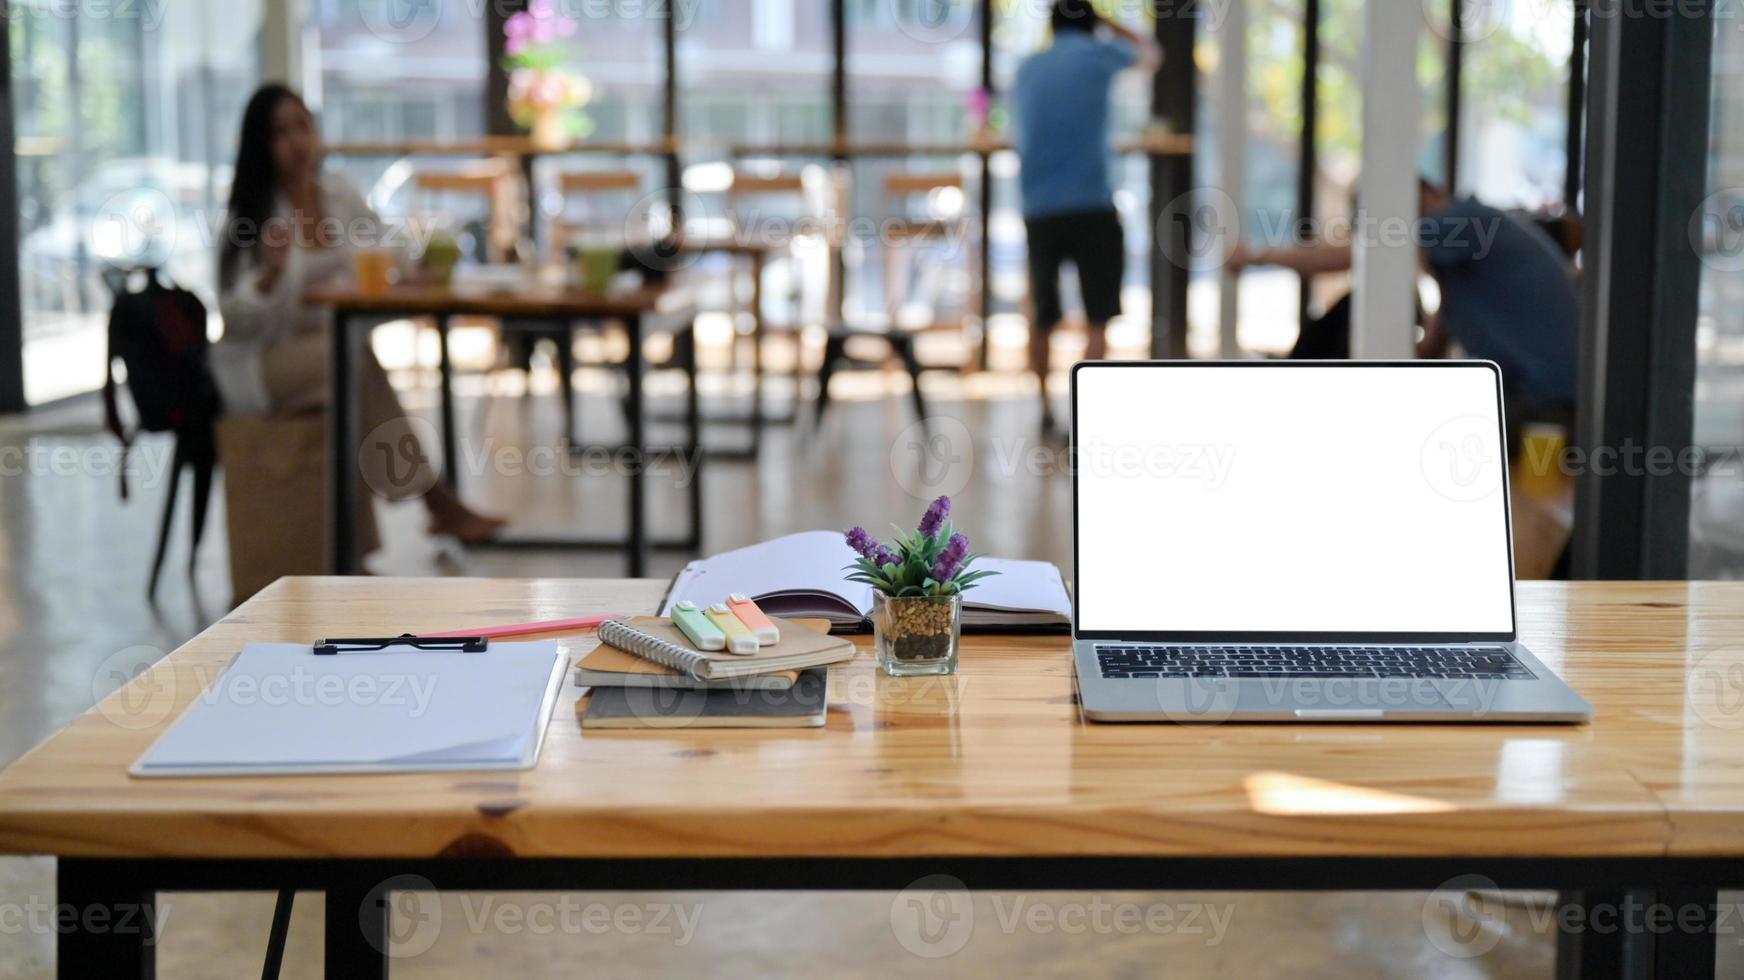 foto ritagliata di laptop, appunti e forniture per ufficio su una scrivania in legno in un comodo spazio di lavoro condiviso.